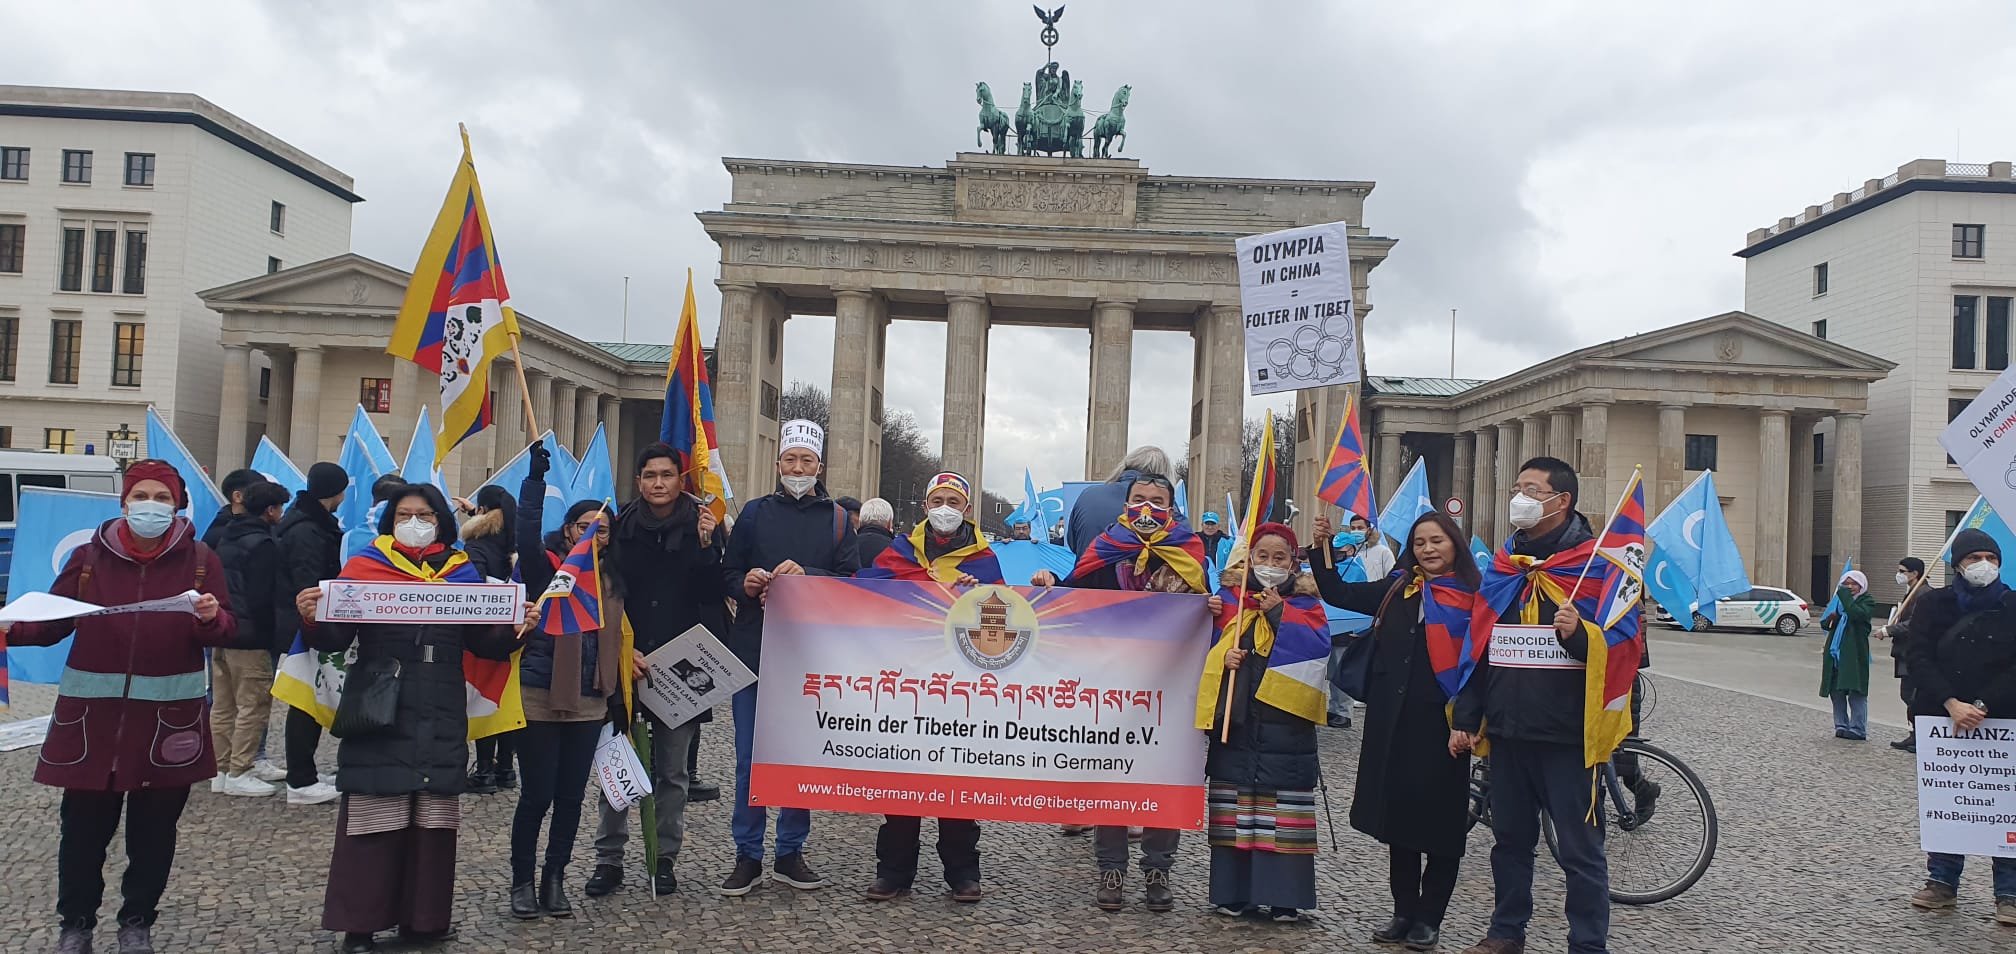 Associação tibetana na Alemanha junto com grupos do Tibete e pediu boicote diplomático aos Jogos Olímpicos de Pequim 2022 2 Comunidades tibetanas na Suíça e Alemanha pedem boicote diplomático aos Jogos Olímpicos de Pequim 2022